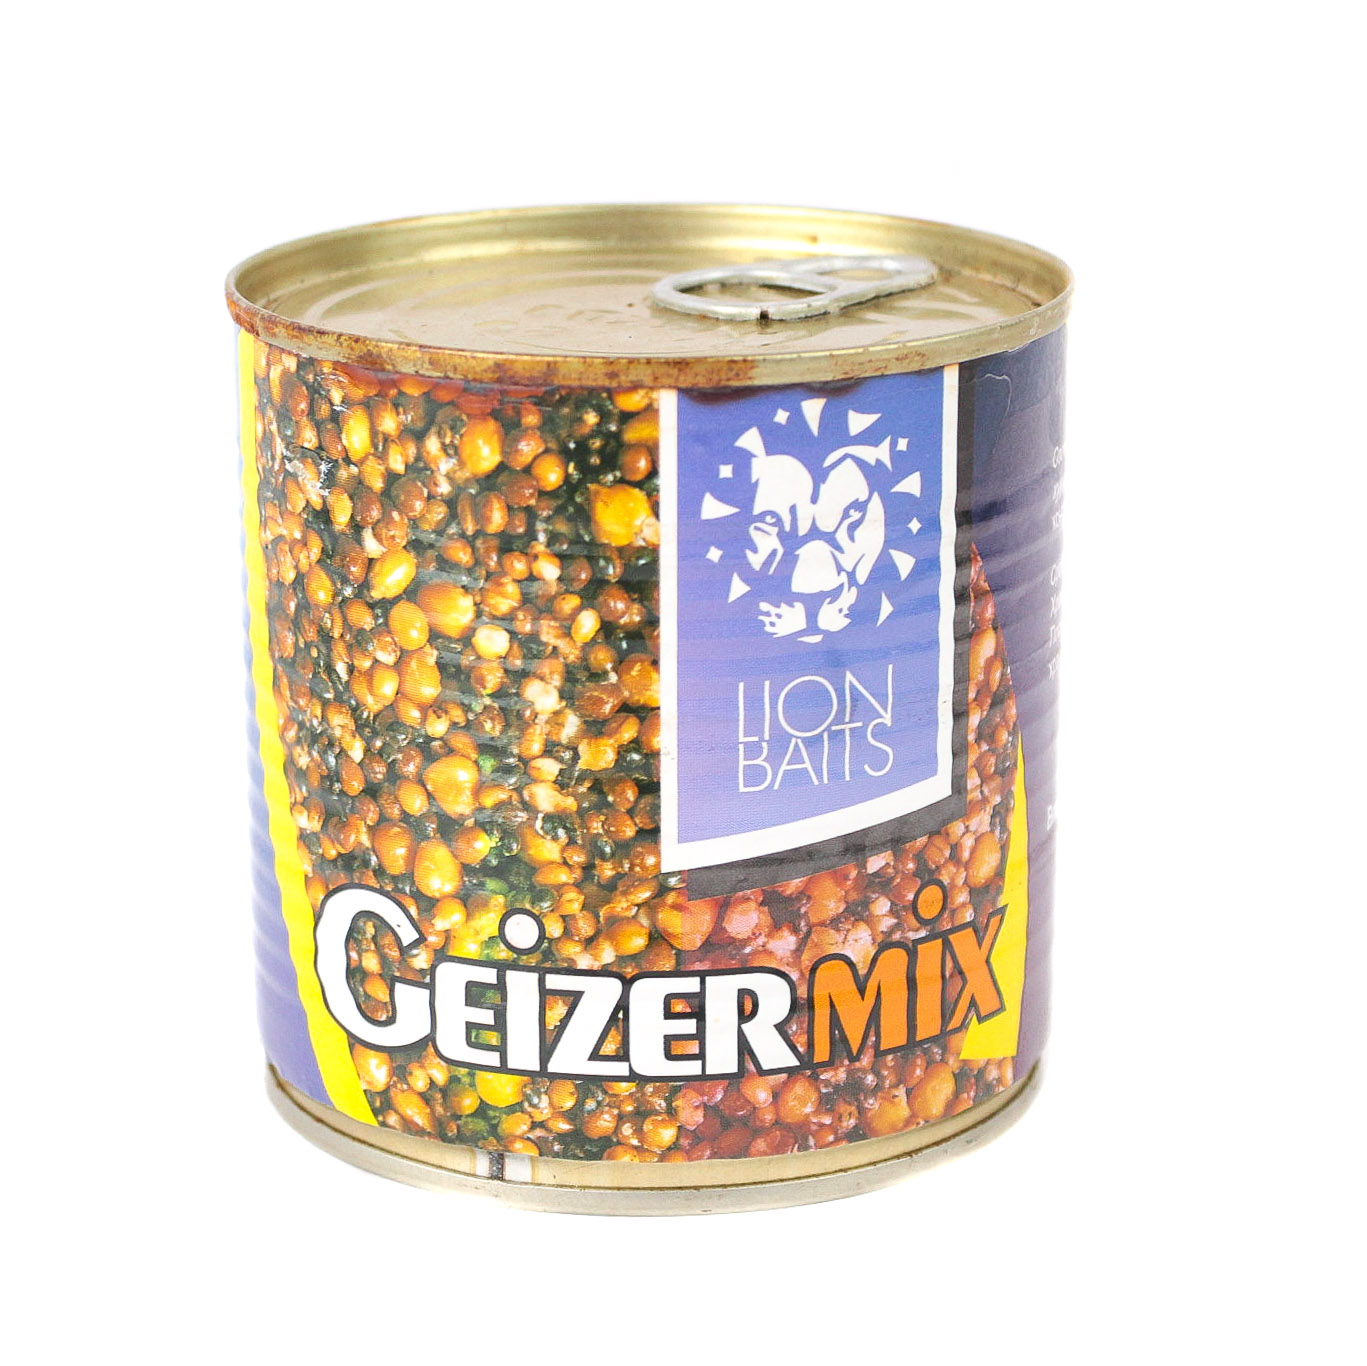 Консервированная зерновая смесь Lion Baits geizer mix 430мл - фото 1